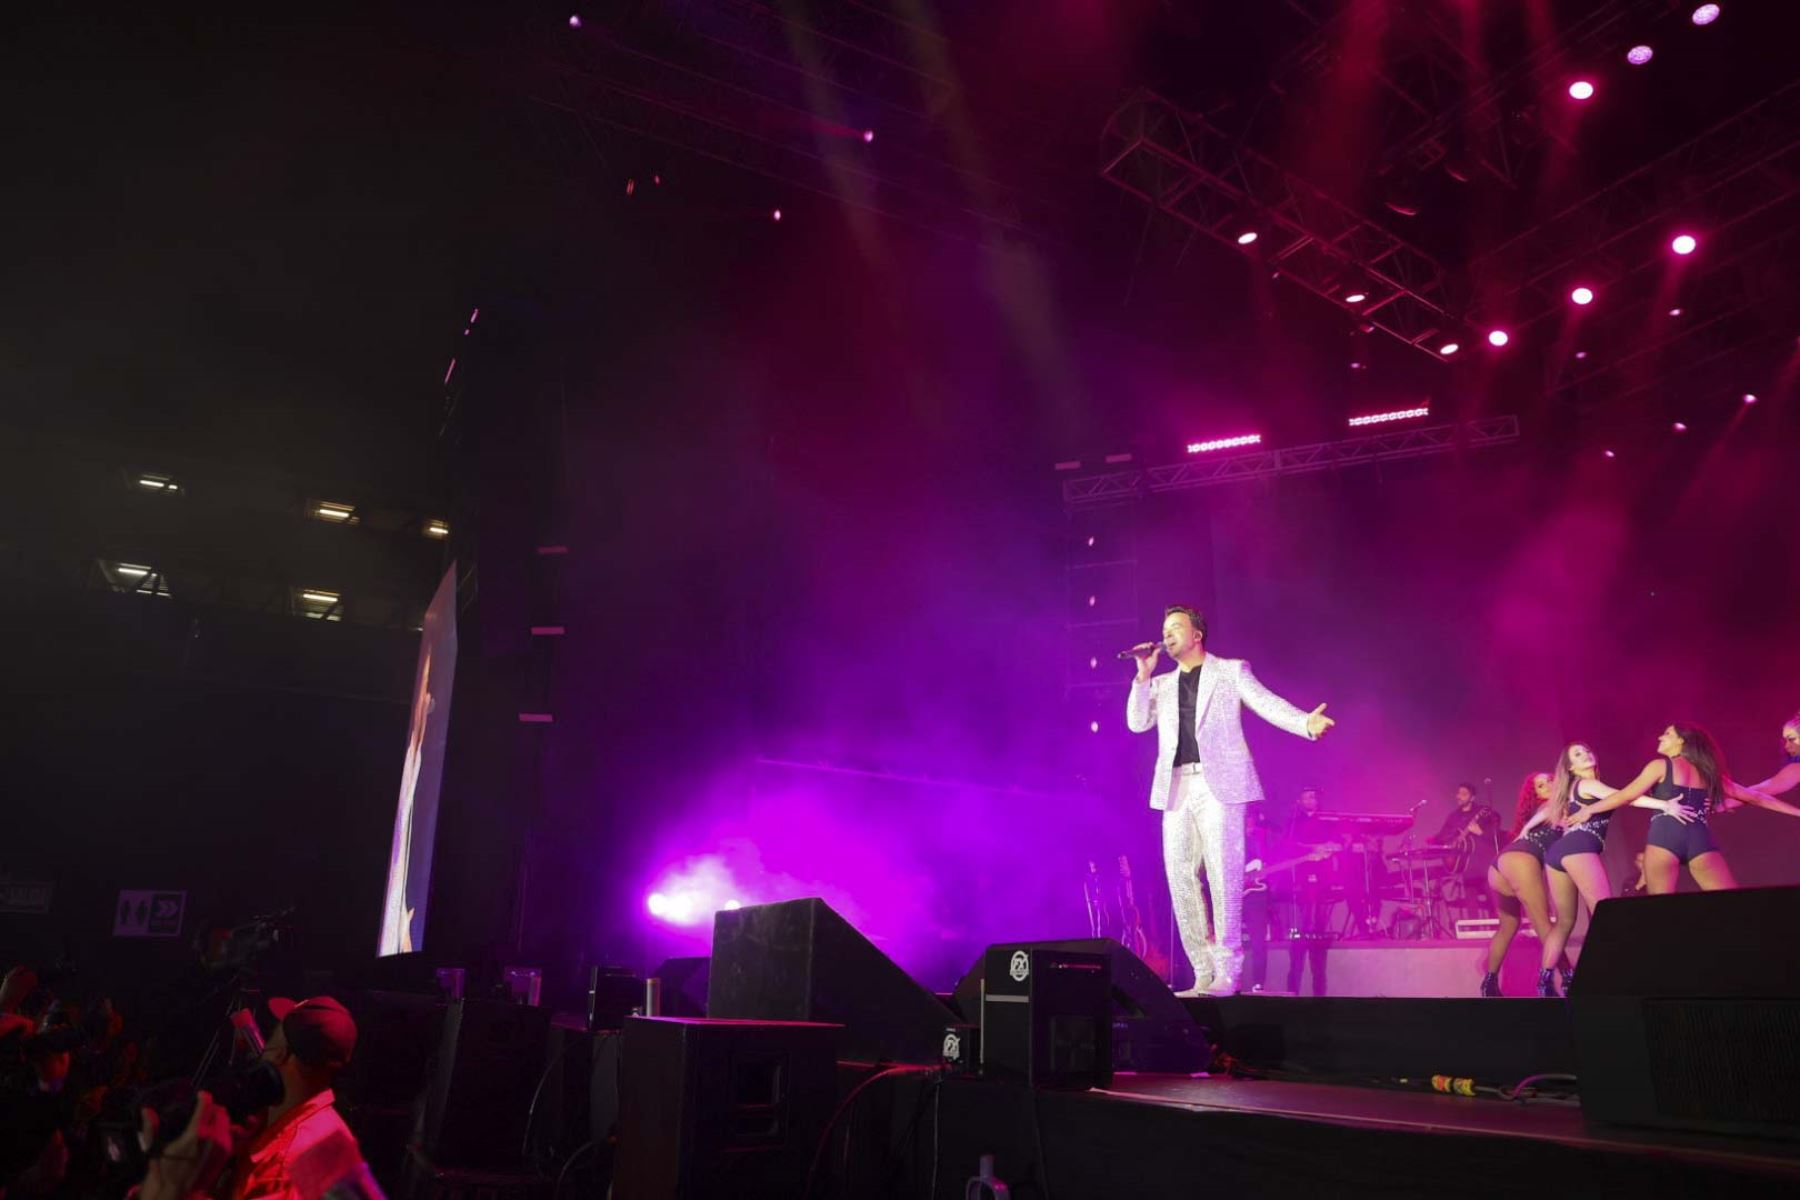 El artista puertorriqueño Luis Fonsi llegó a Lima este miércoles 15 de junio y deslumbró al público con lo mejor de su repertorio como parte de su gira “La Noche Perfecta”. El cantante se presentó en el Arena Perú de Surco. Foto: ANDINA/Andrés Valle